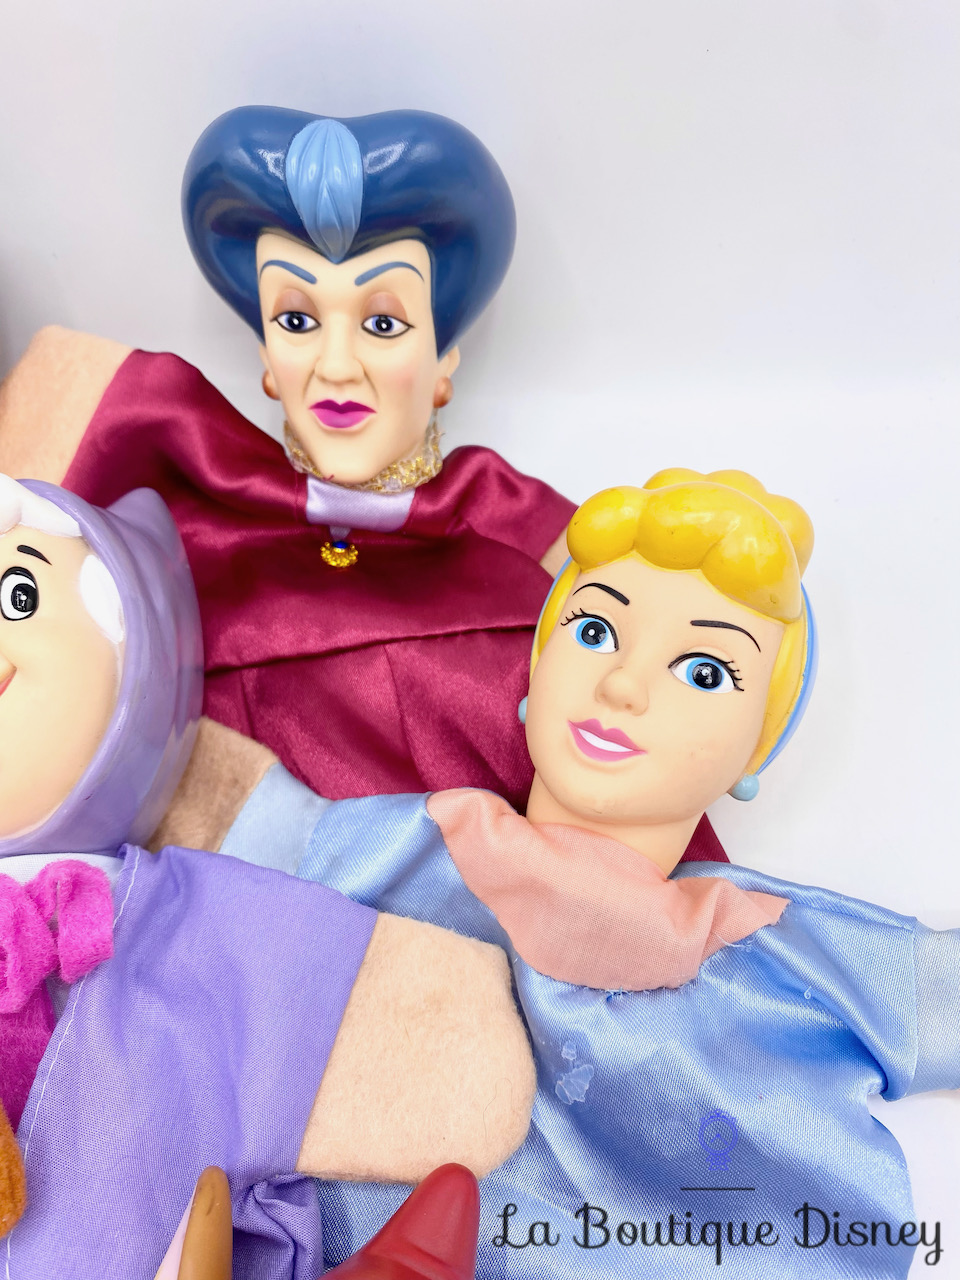 marionnettes-cendrillon-disney-vintage-main-jouet-gus-jaq-marraine-tremaine-prince-2